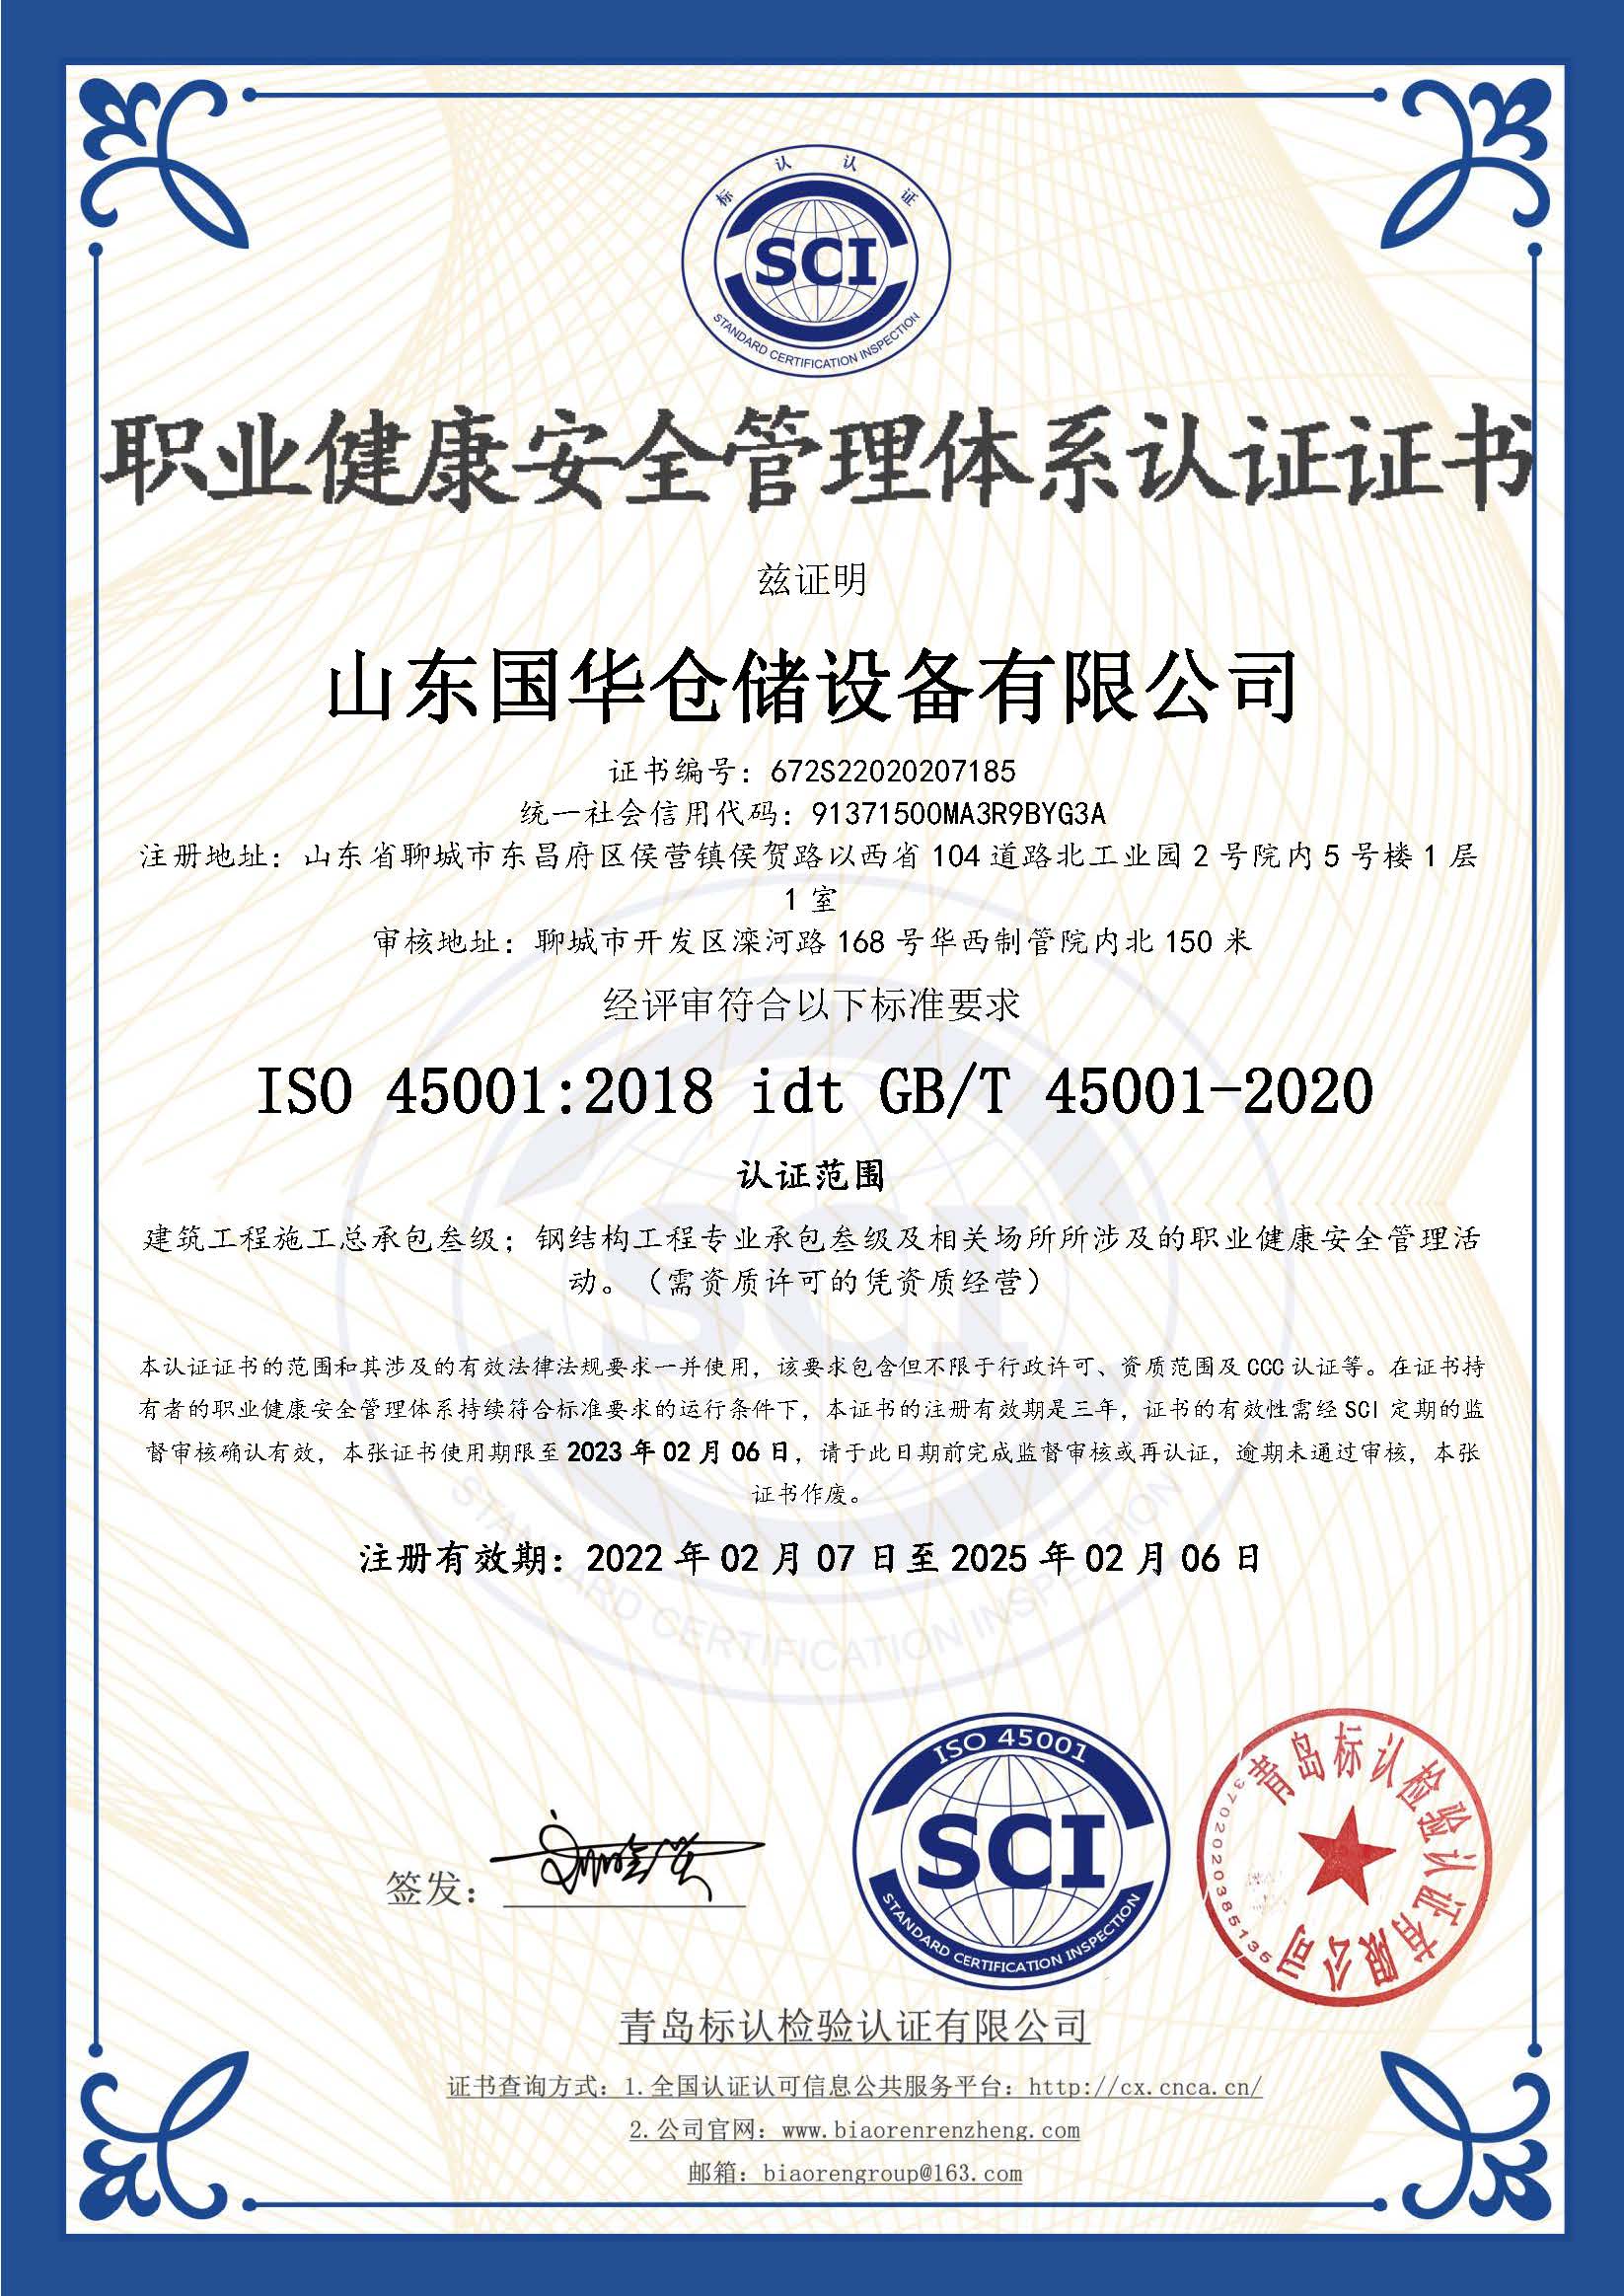 郴州钢板仓职业健康安全管理体系认证证书